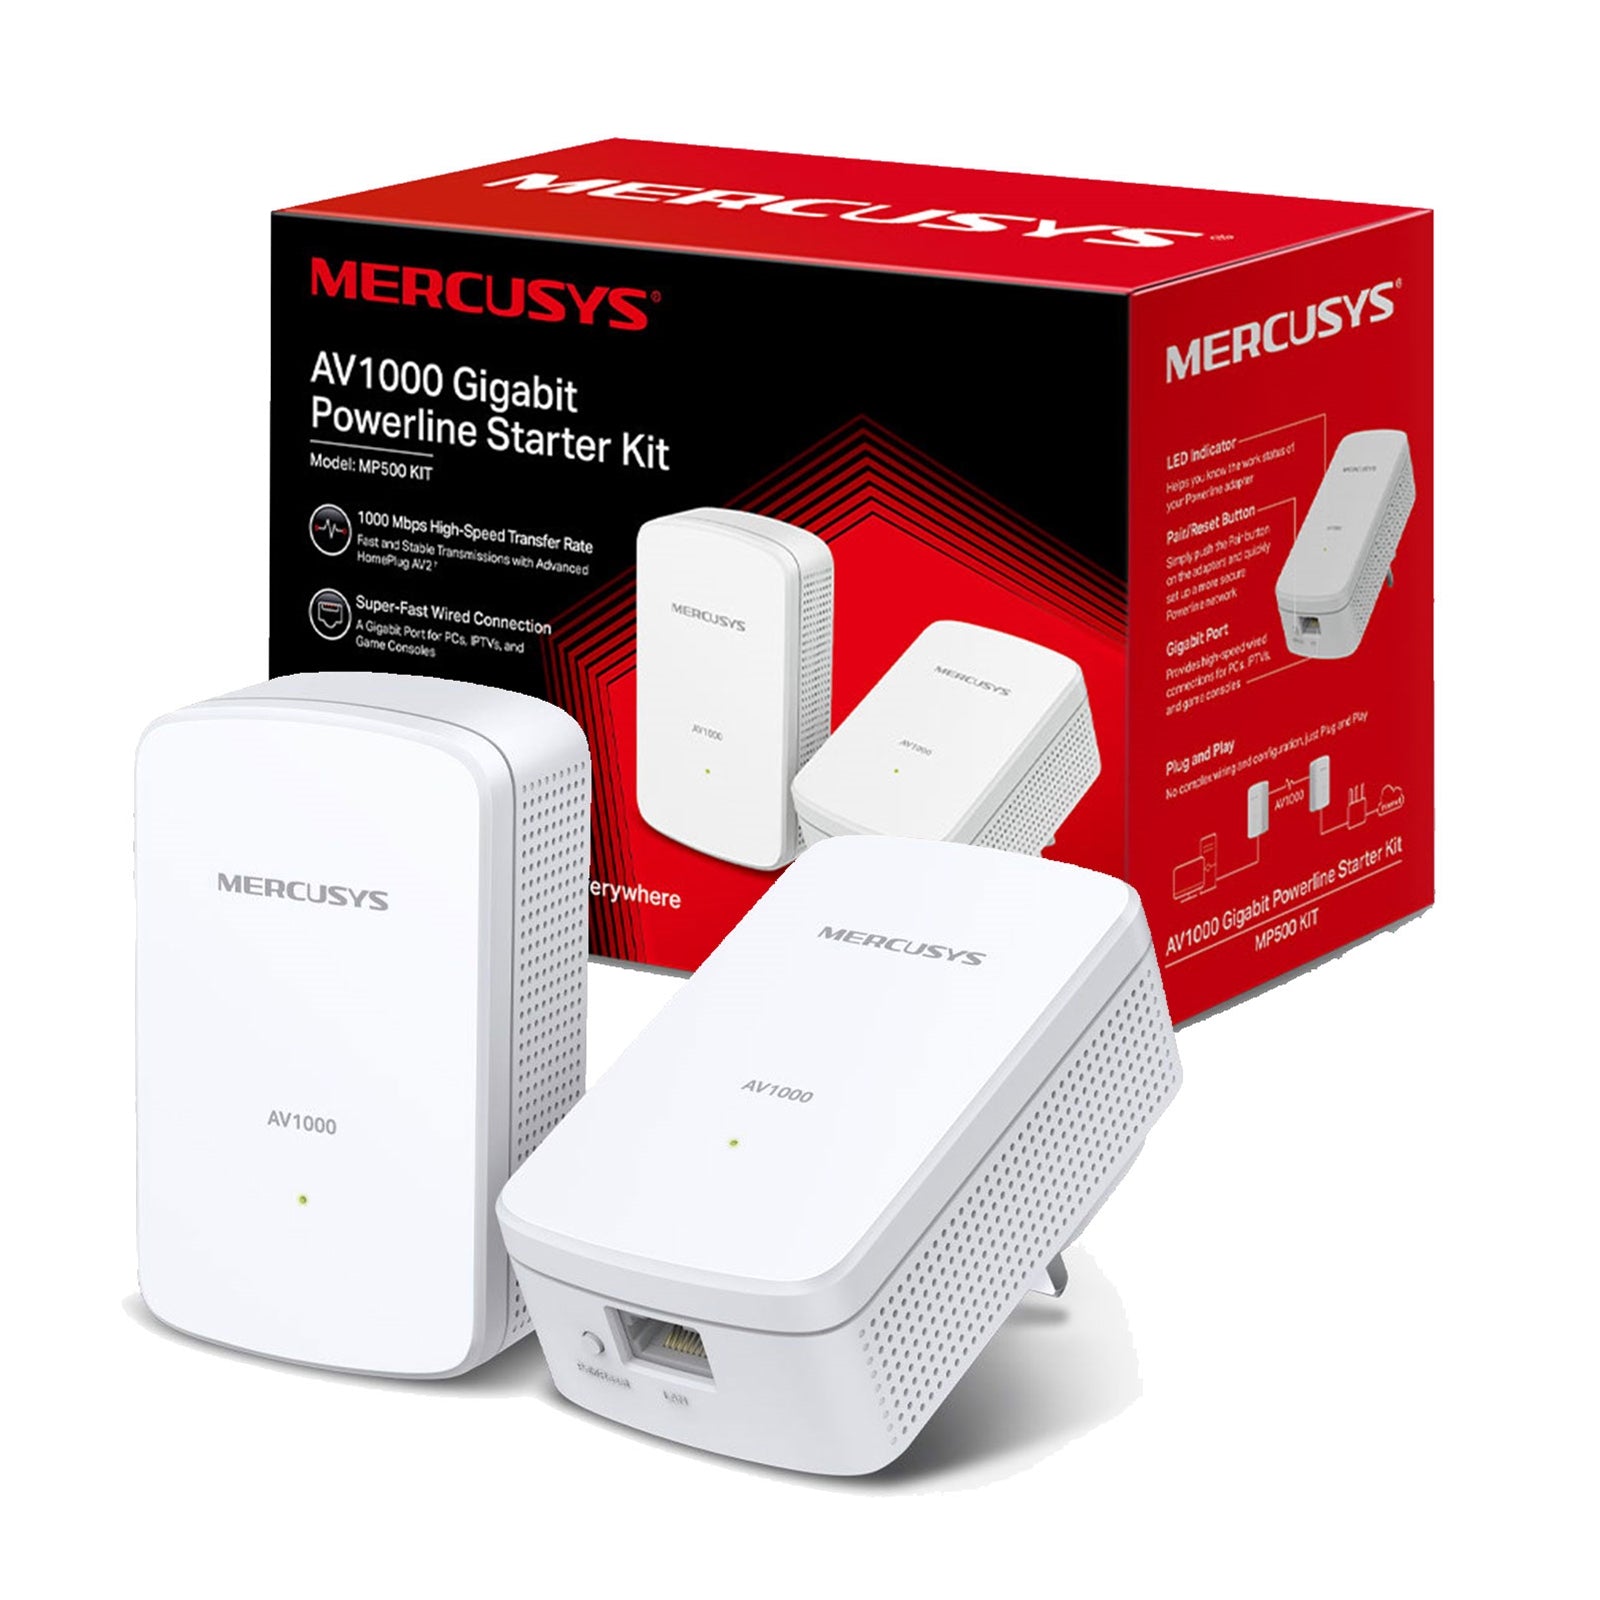 Mercusys AV1000 Gigabit Powerline Starter Kit